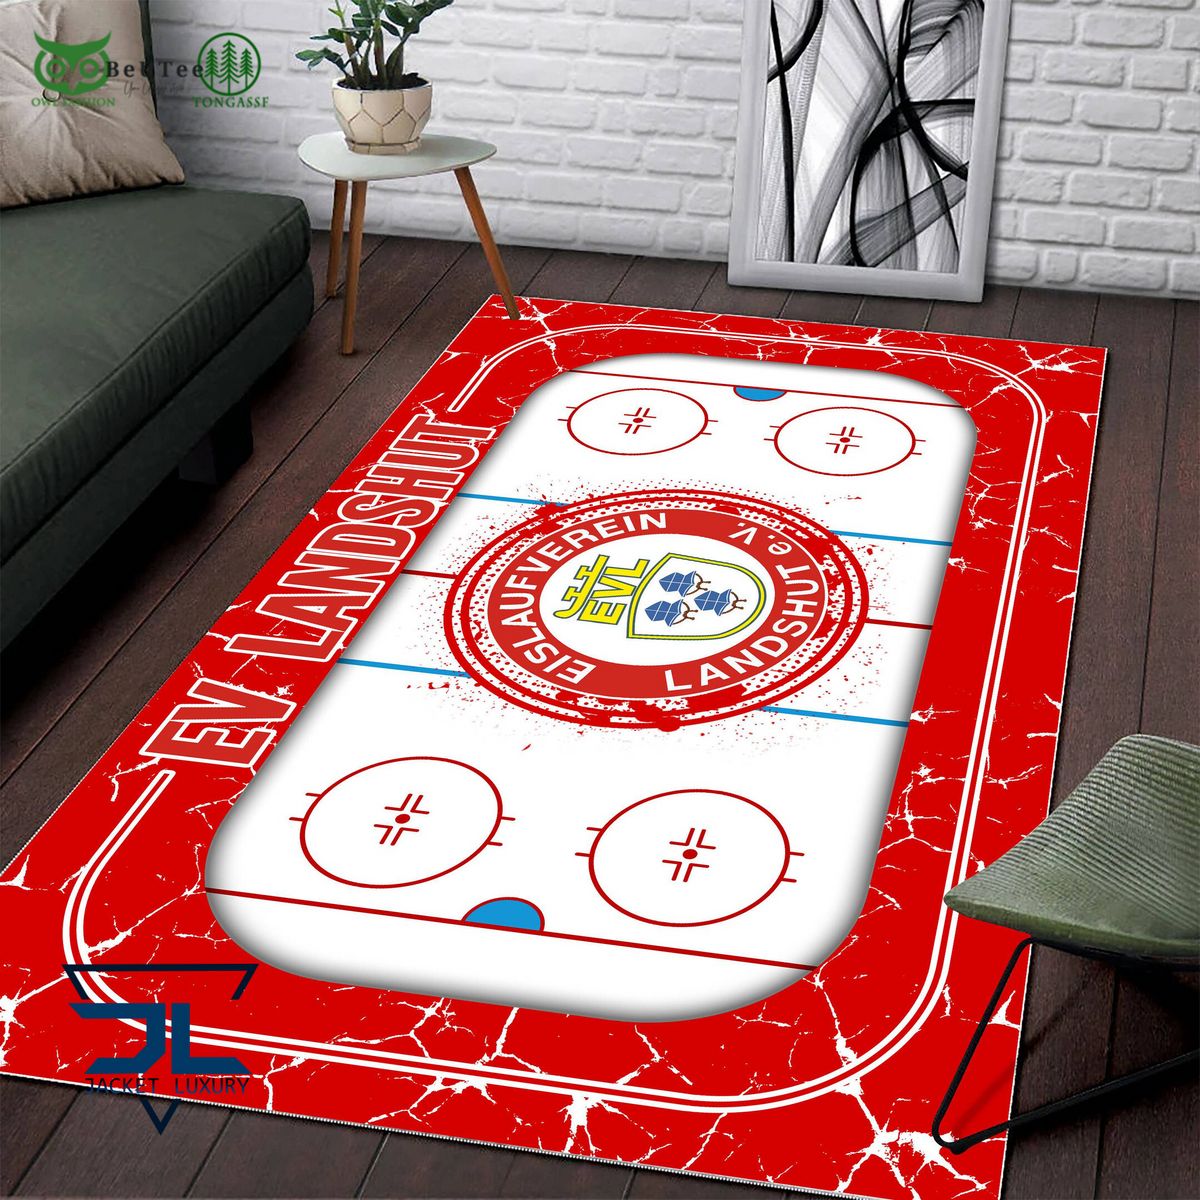 ev landshut germany ice hockey team carpet rug 2 rU94I